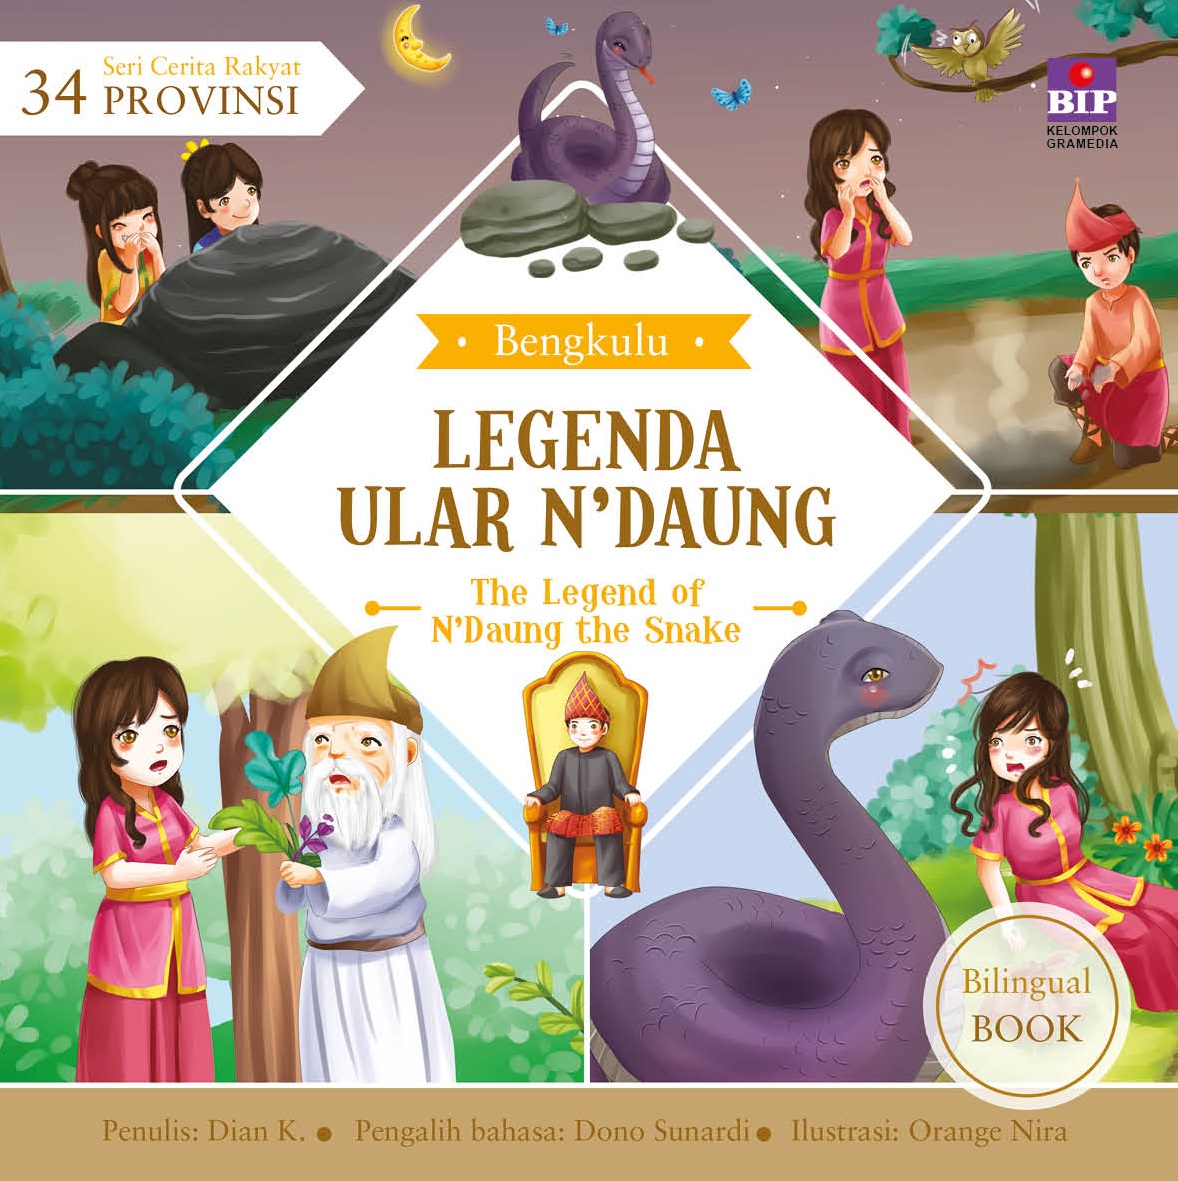 Seri Cerita Rakyat 34 Provinsi: Legenda Ular N'daung